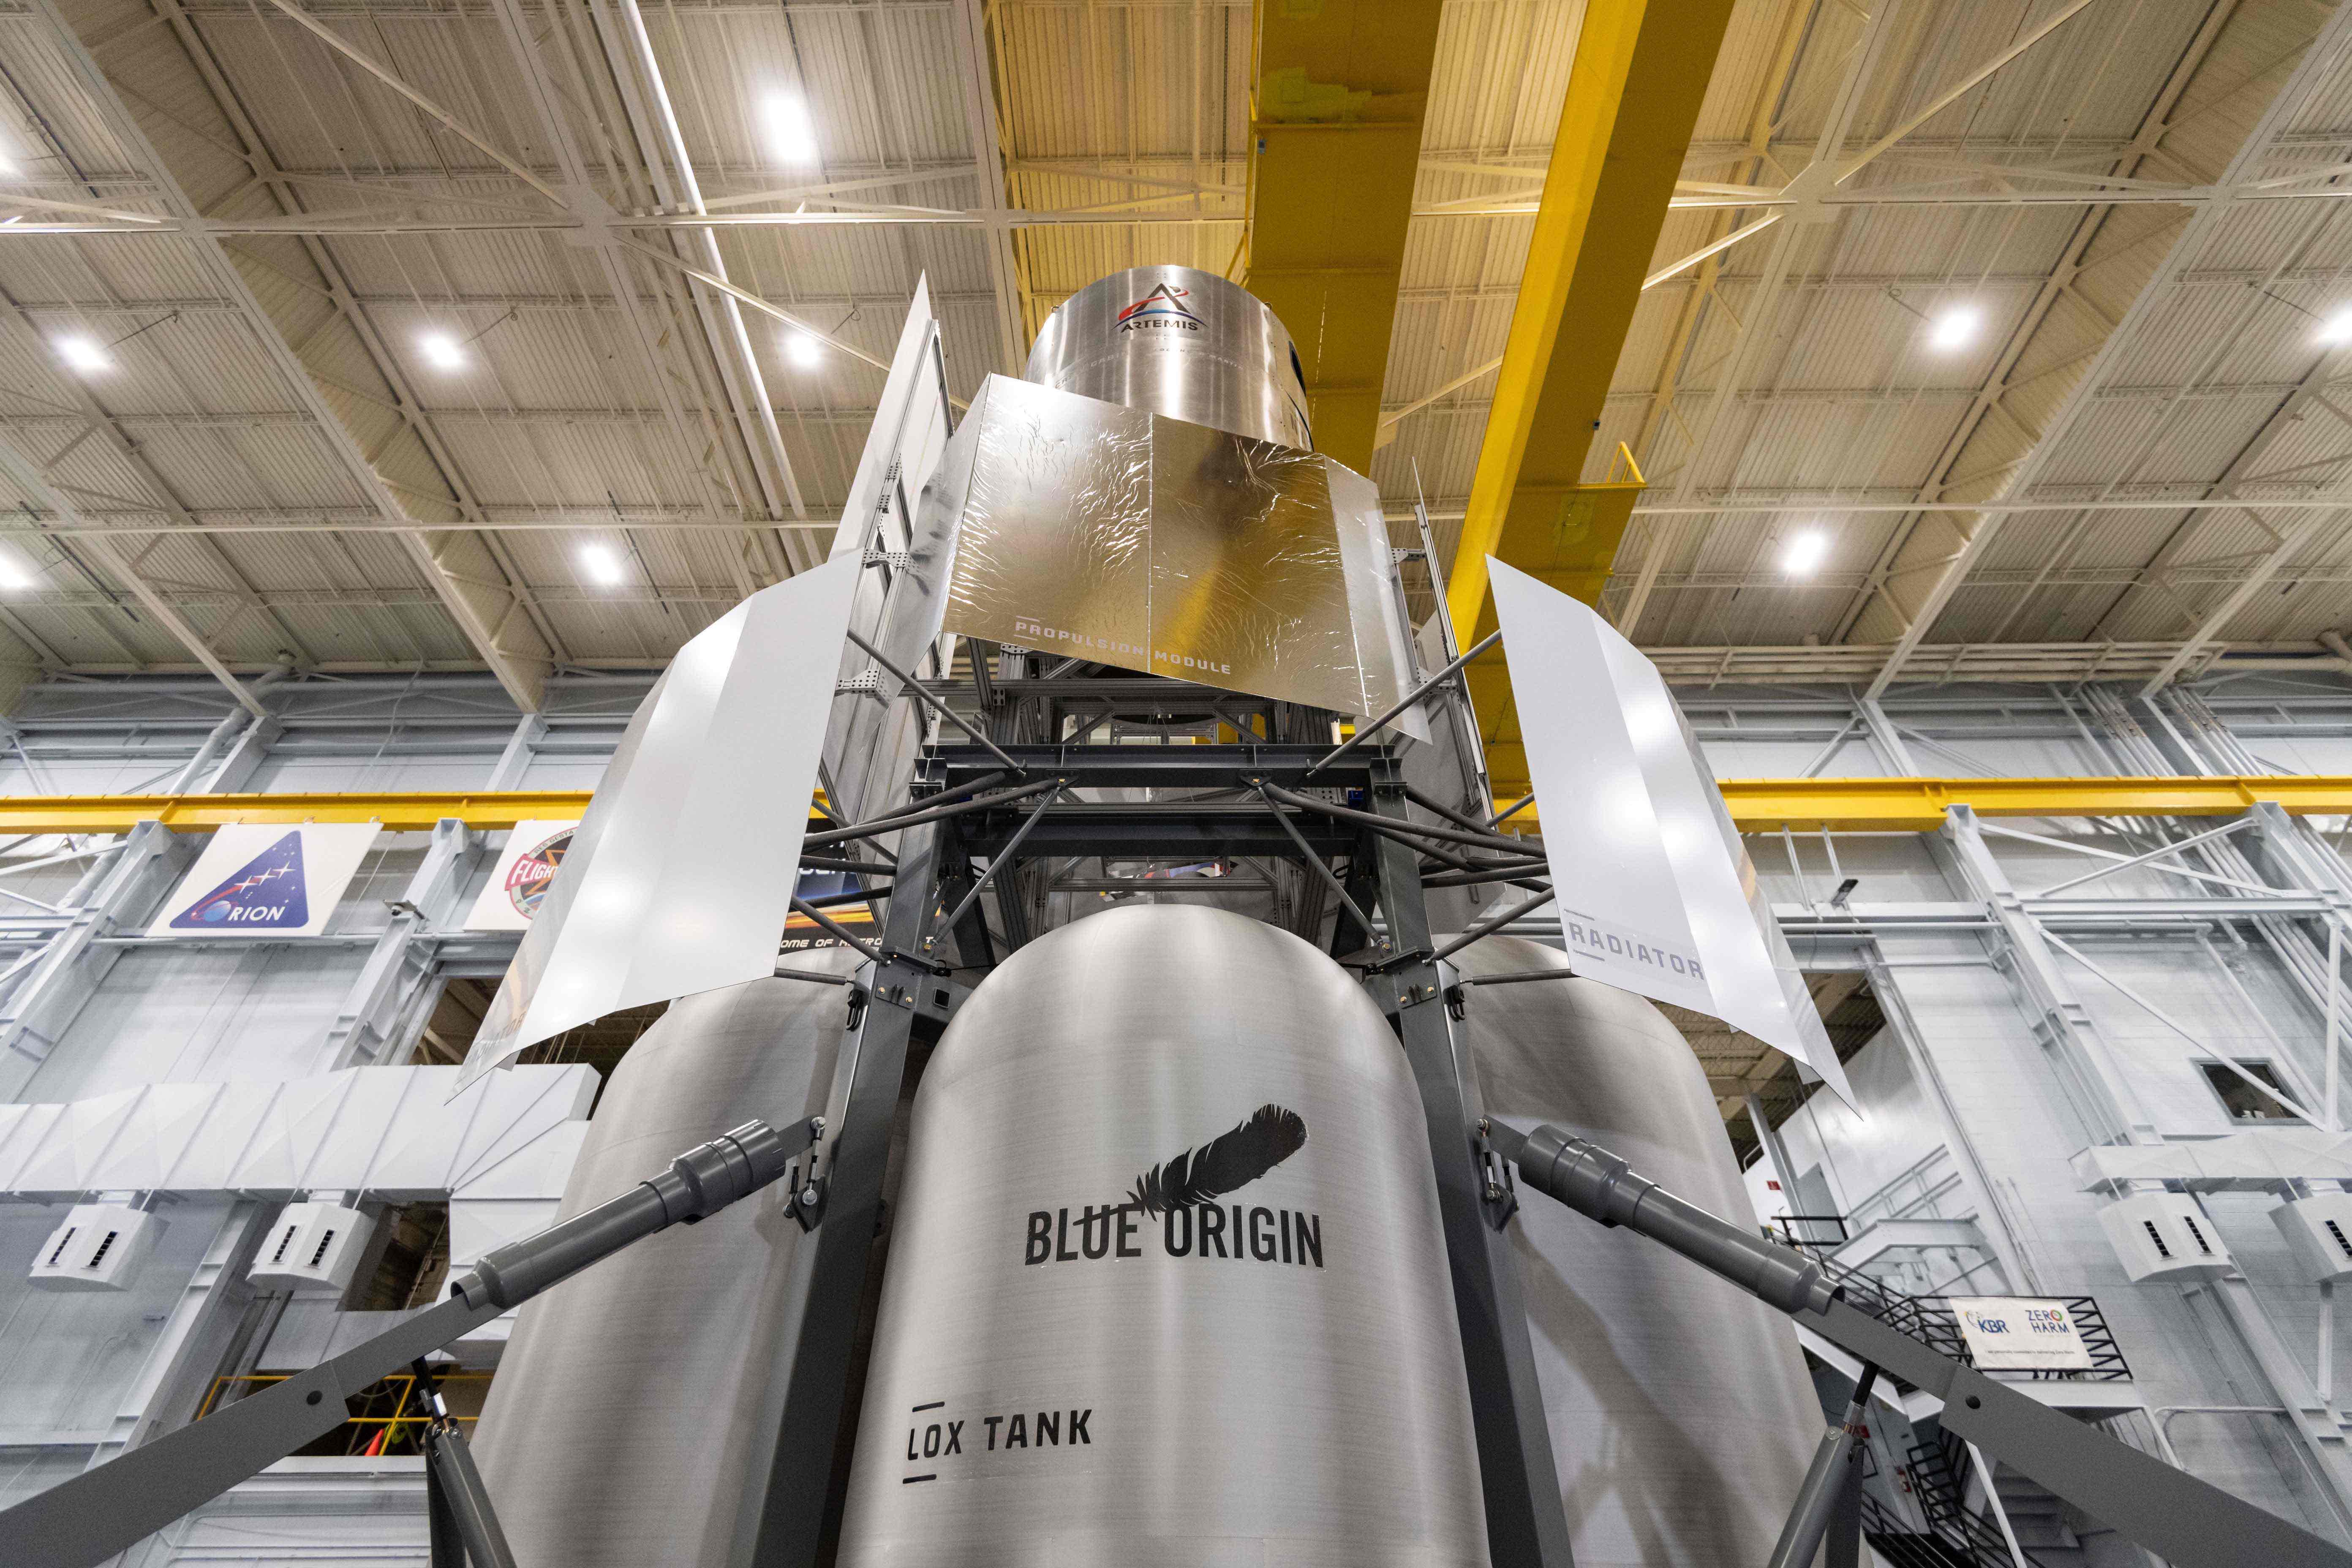 Blue Originled team delivers Lunar Lander engineering mockup To NASA